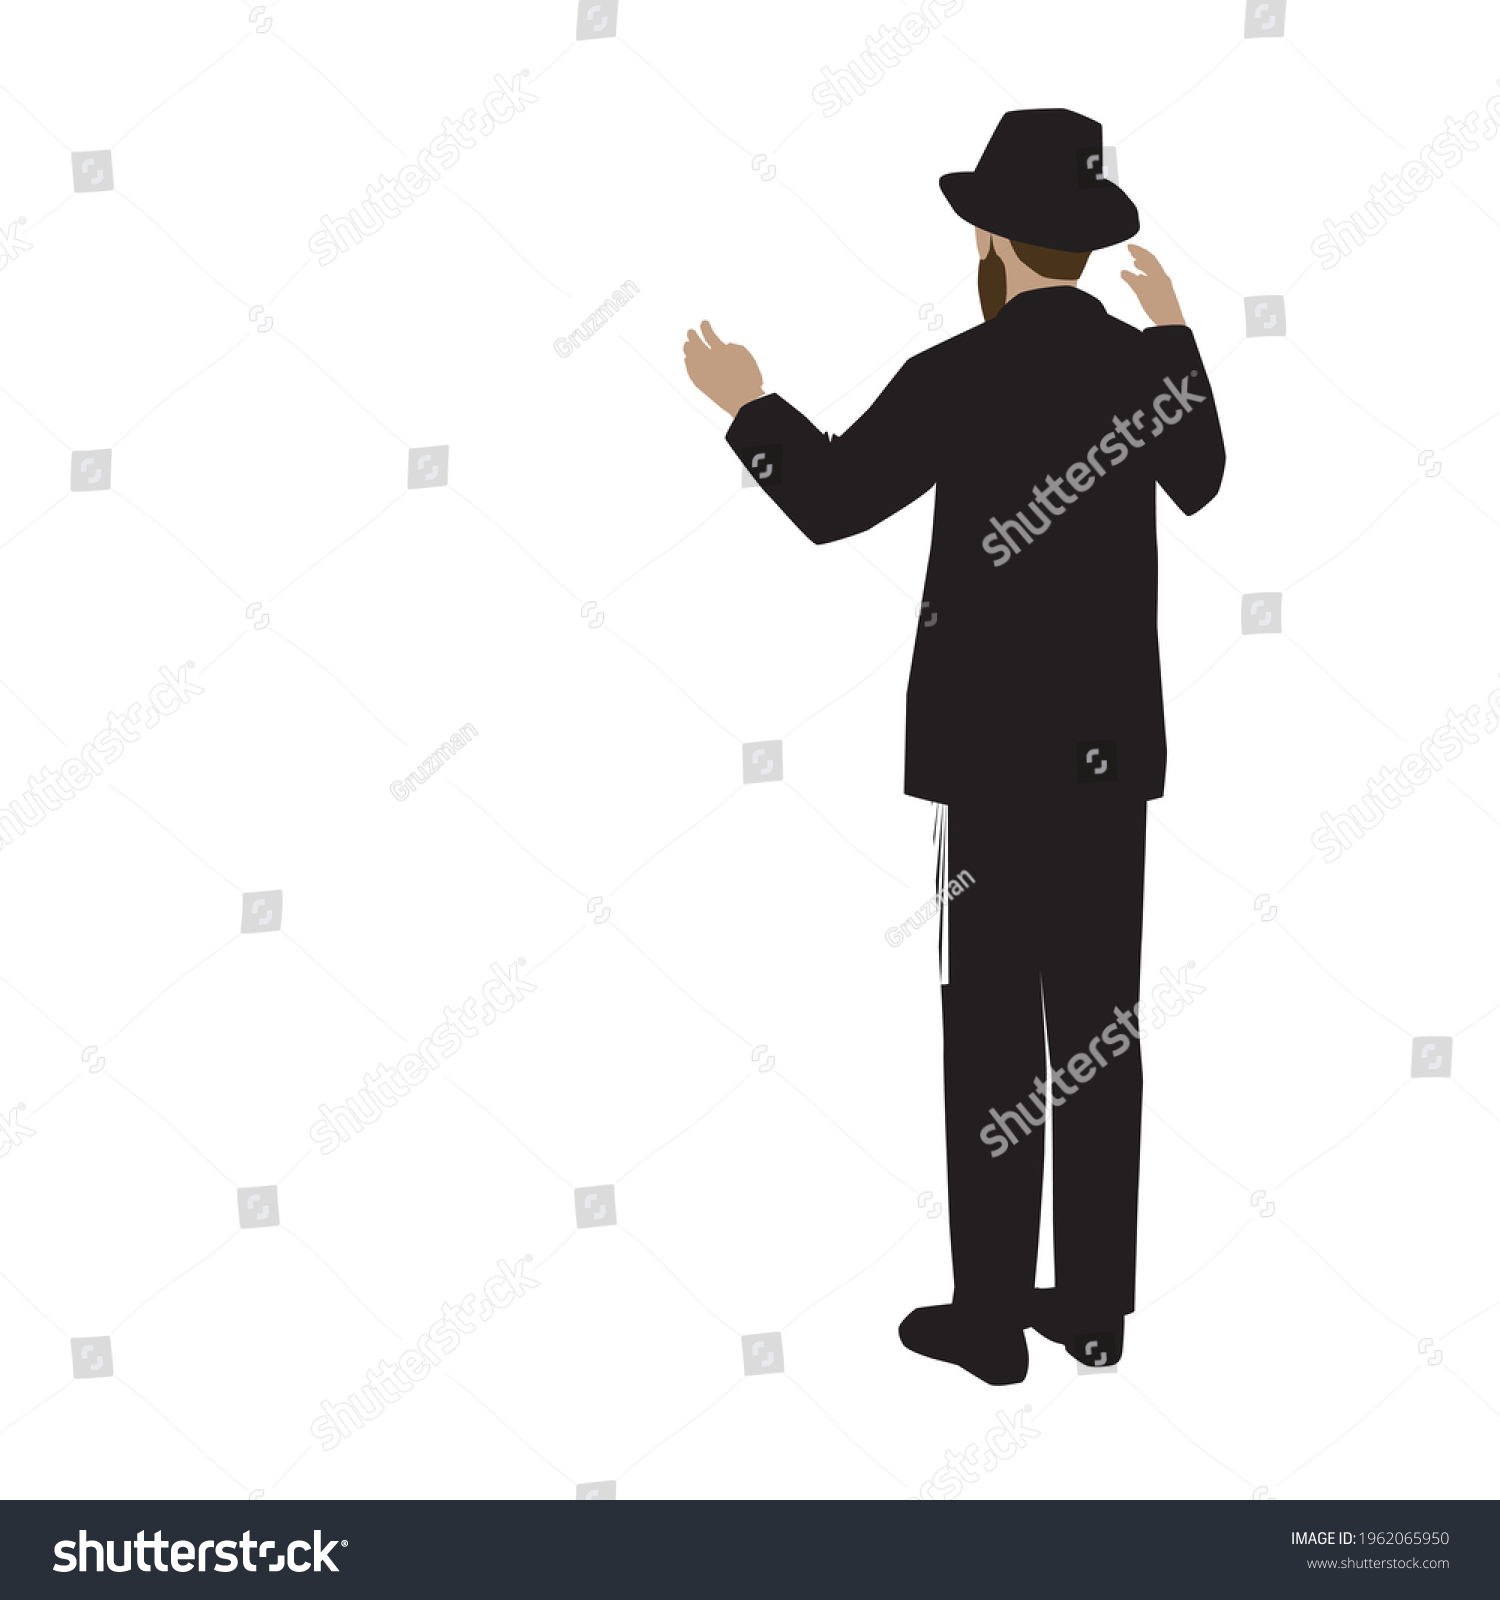 ציור וקטורי של חסיד חרדי אברך יהודי דתי עם כובע וחליפה מגבעת עומד ומרים ידיים לשמים בתפילה בהו...jpg